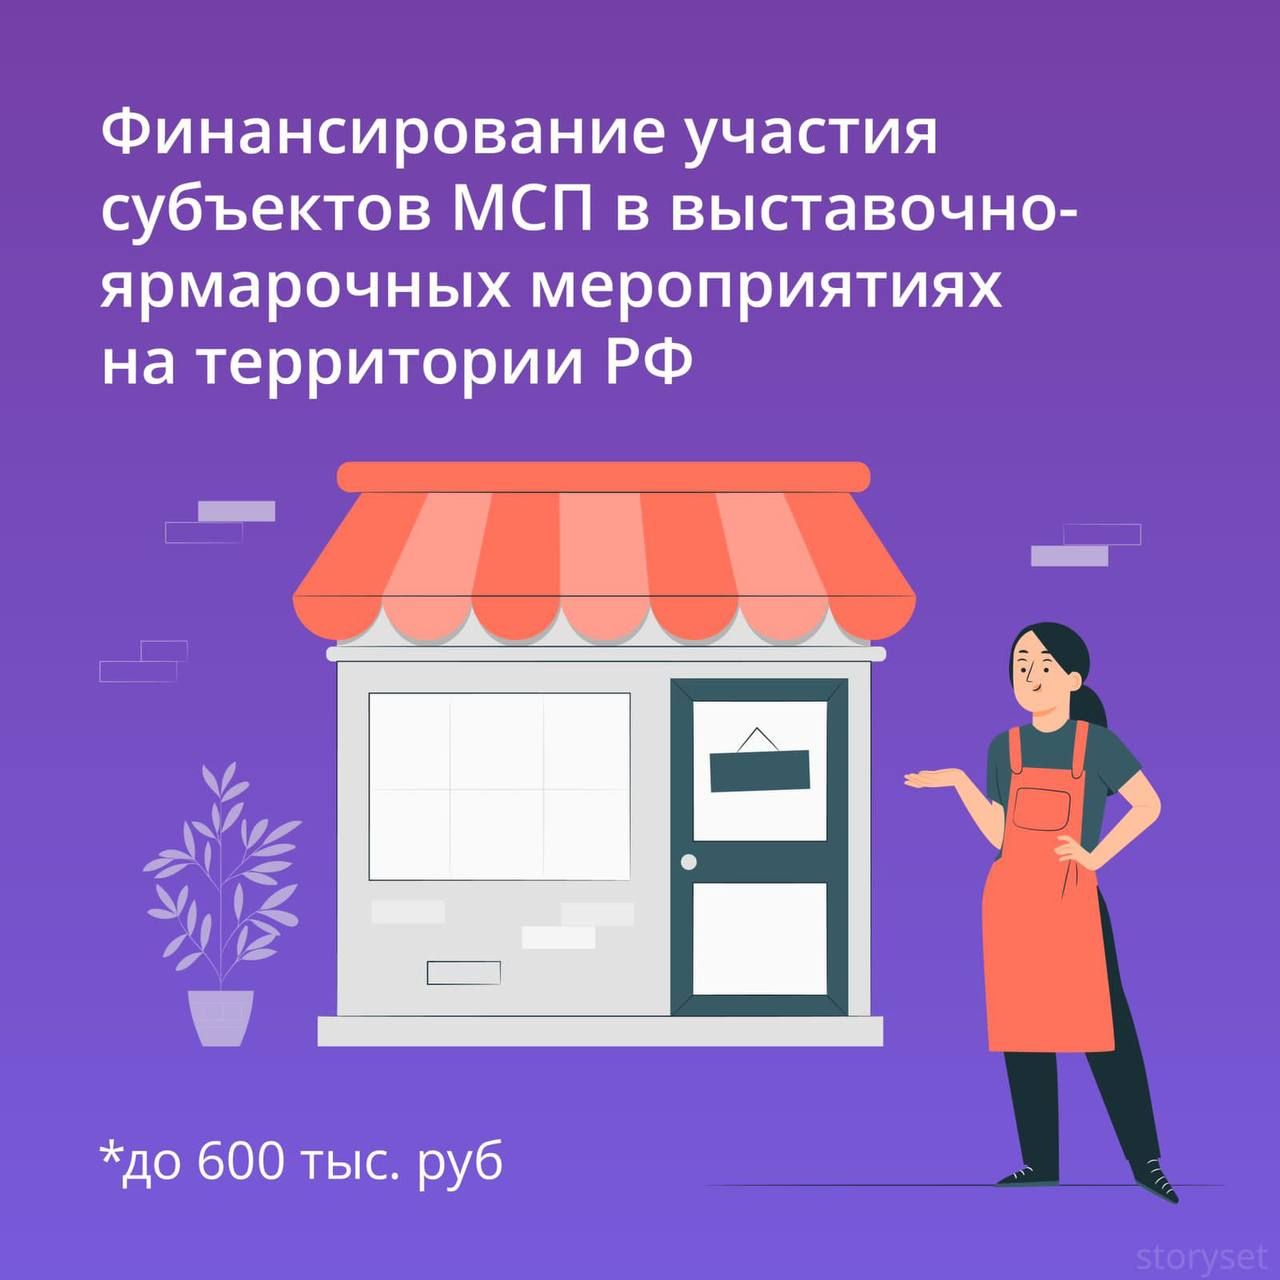 В Татарстане стартовал прием заявок от бизнеса на получение бесплатных услуг центра «Мой бизнес» по нацпроекту «Малое и среднее предпринимательство»